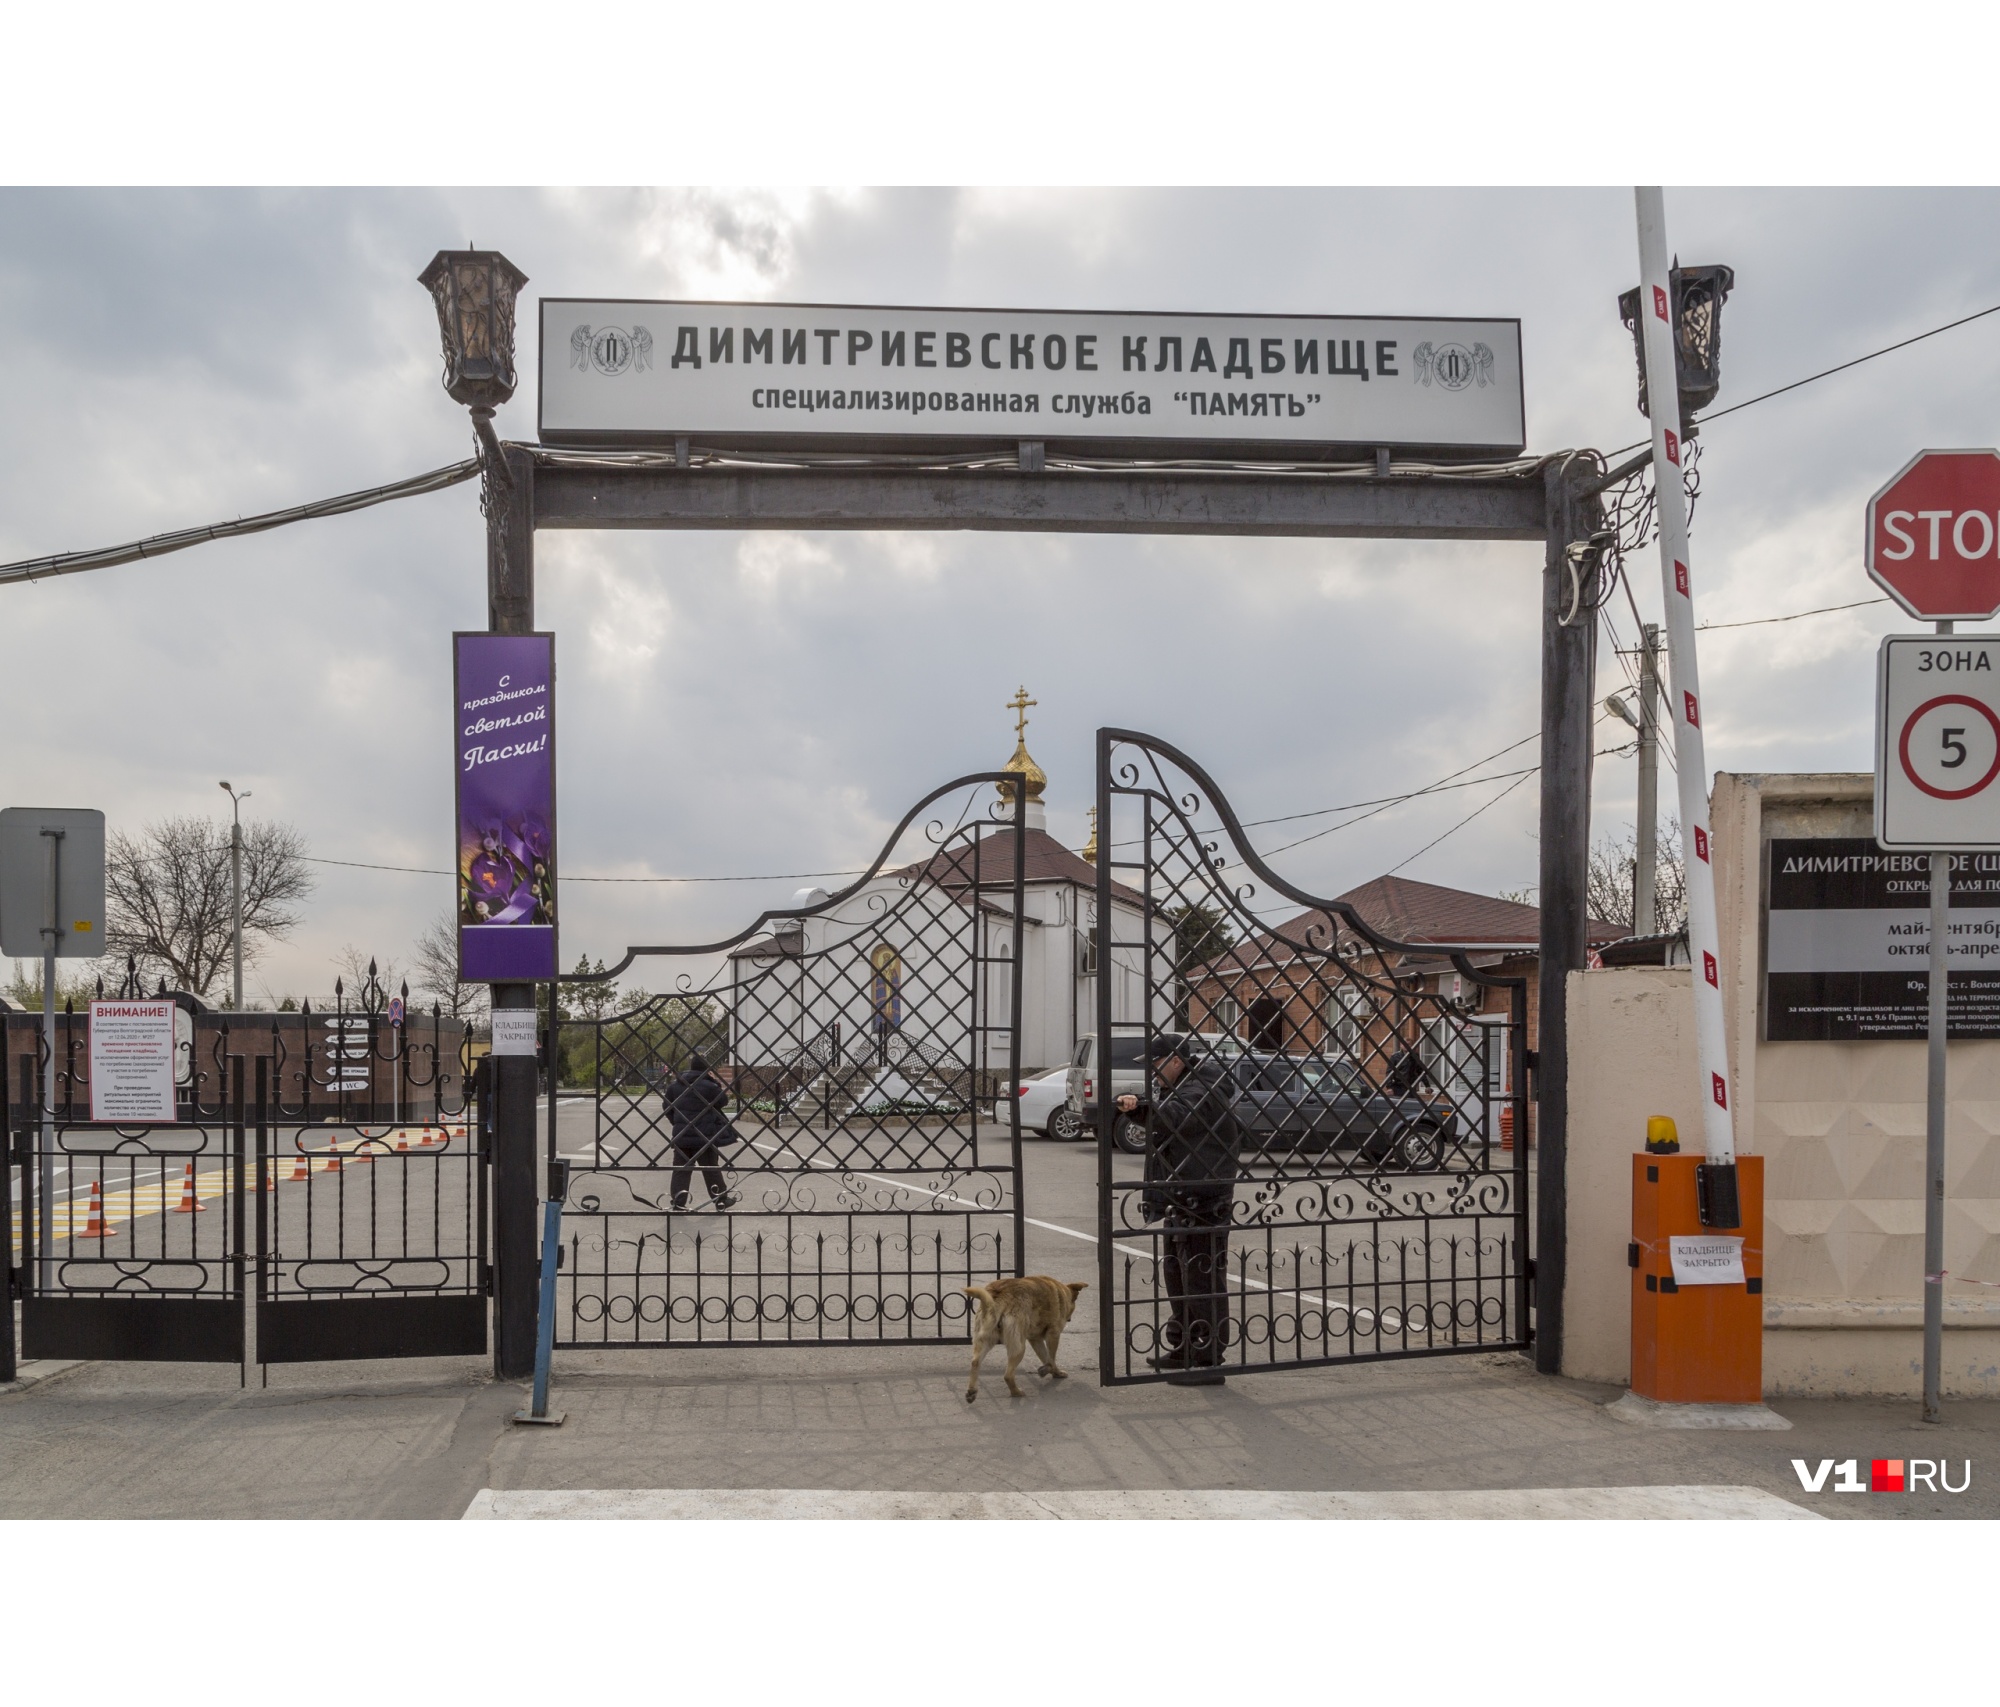 «Почему сюда нельзя, а в парикмахерские можно?»: в Волгограде закрыли на засовы городские кладбища